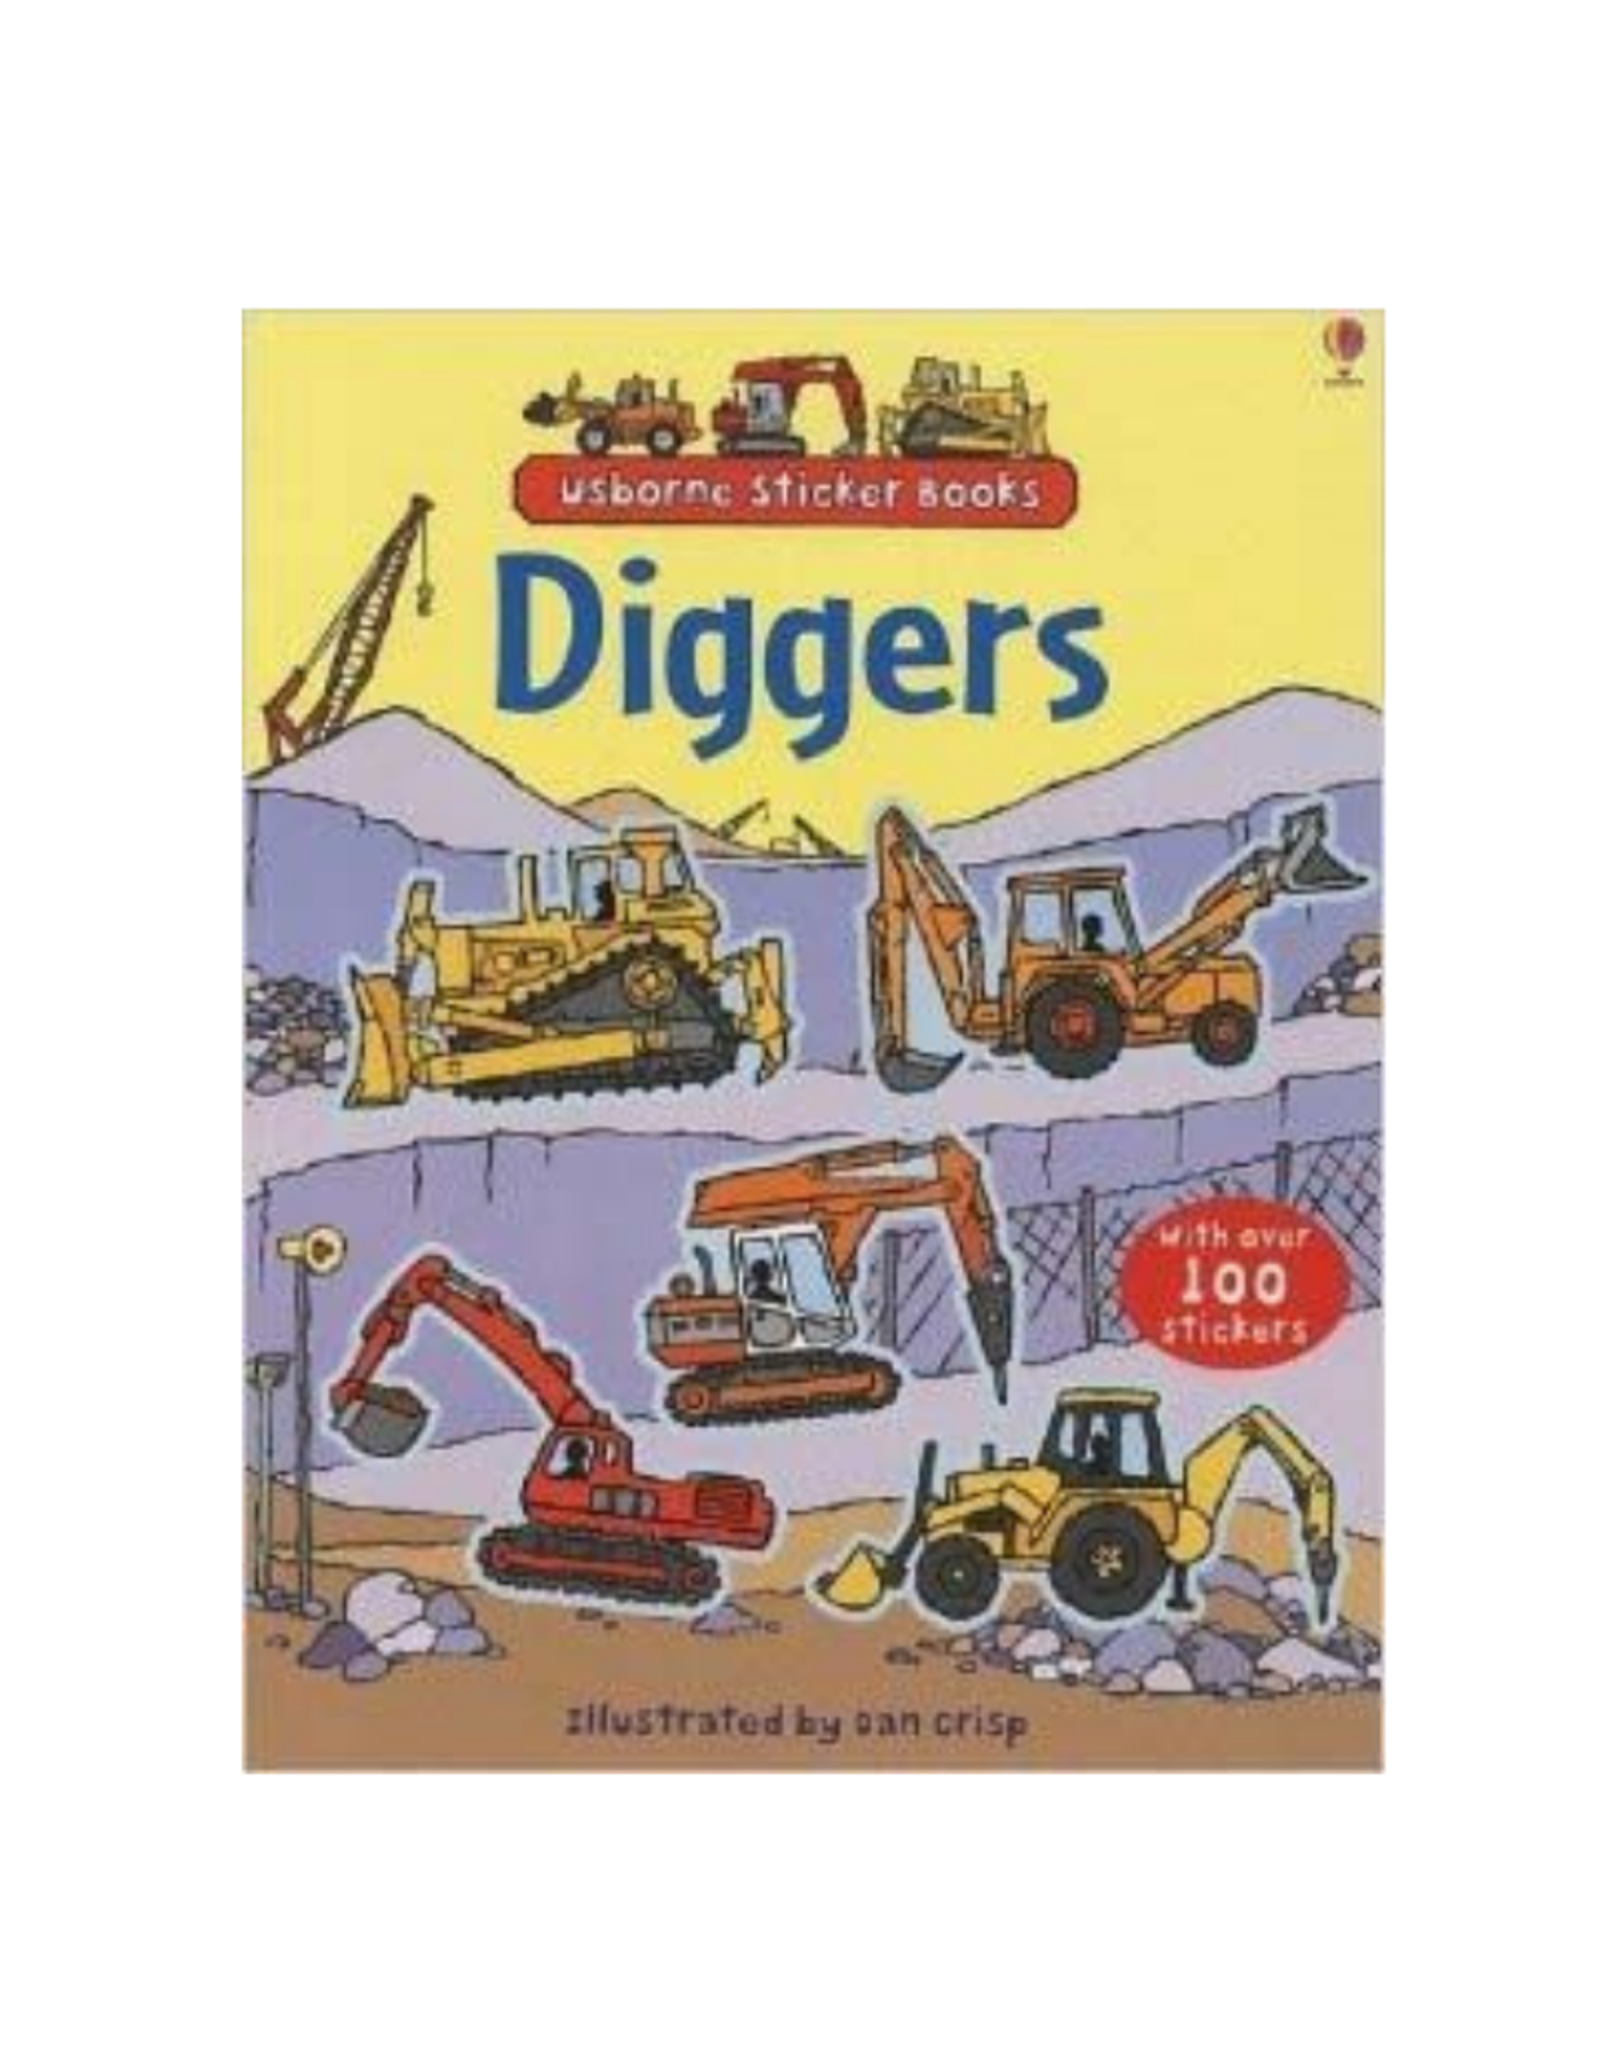 First Sticker Book Diggers